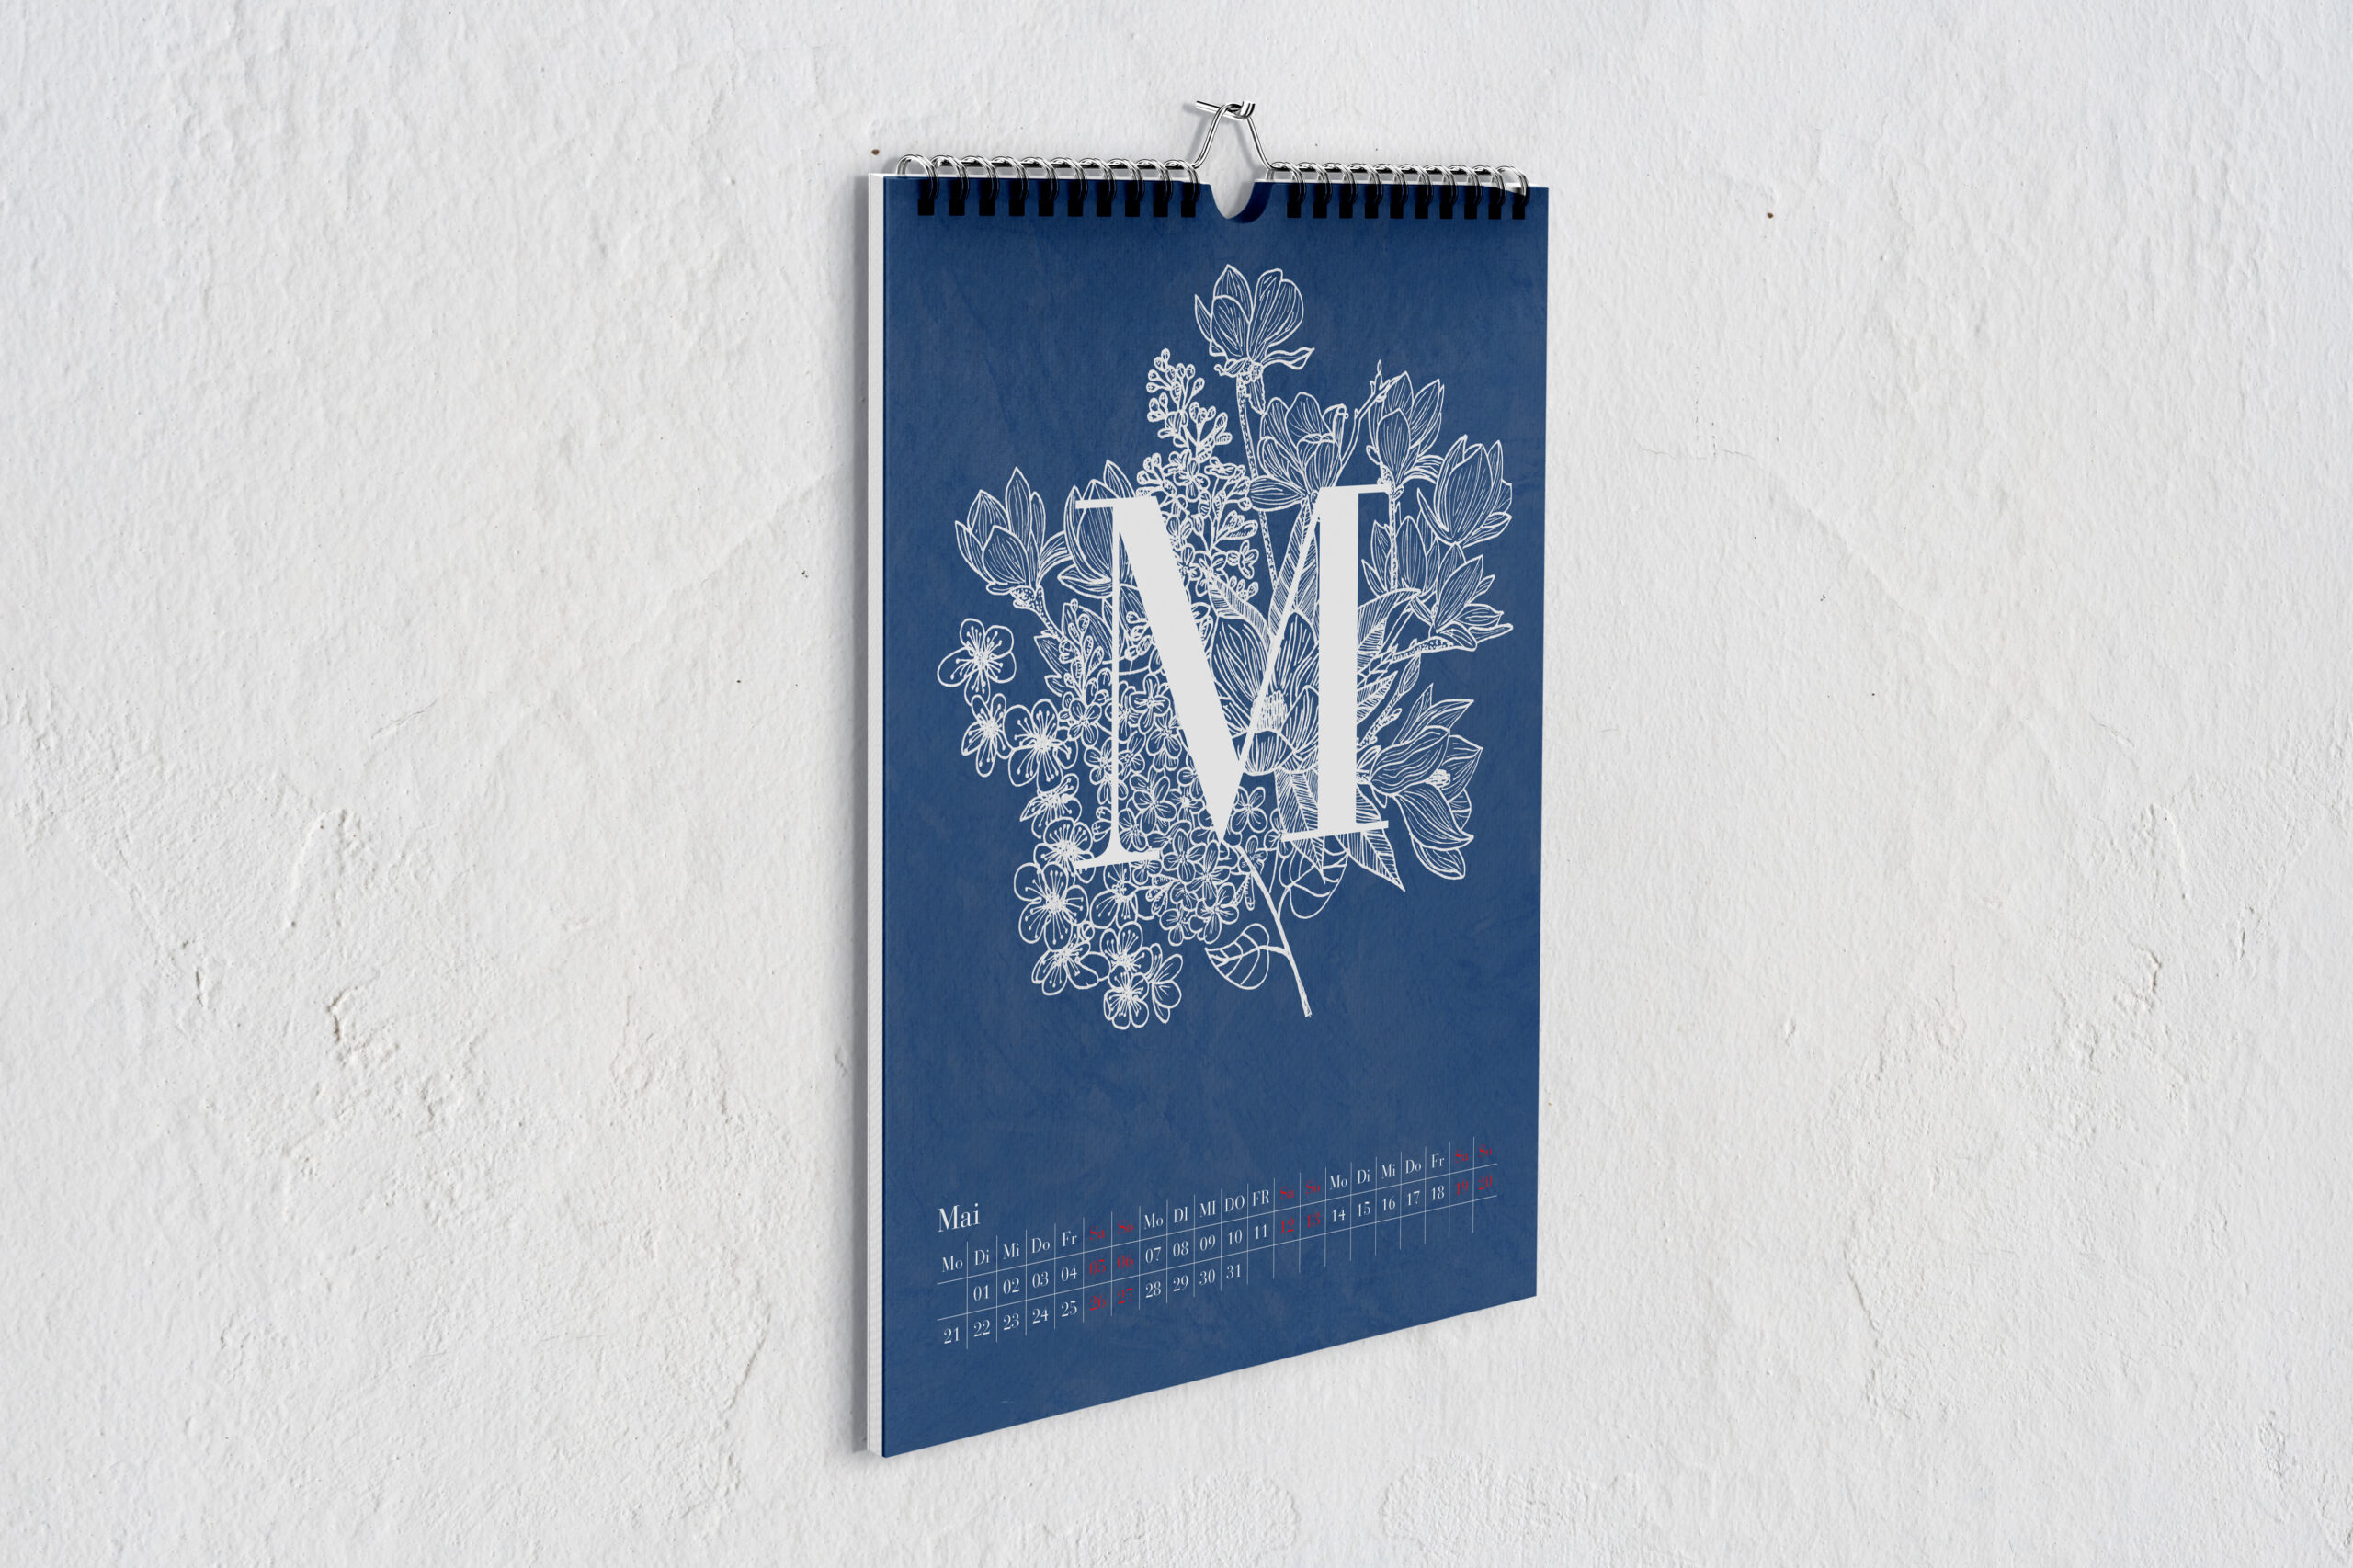 Kalenderblatt für Mai, mit einem großen weißen M vor Zeichnungen von Blumen in weiß vor blauem Hintergrund.